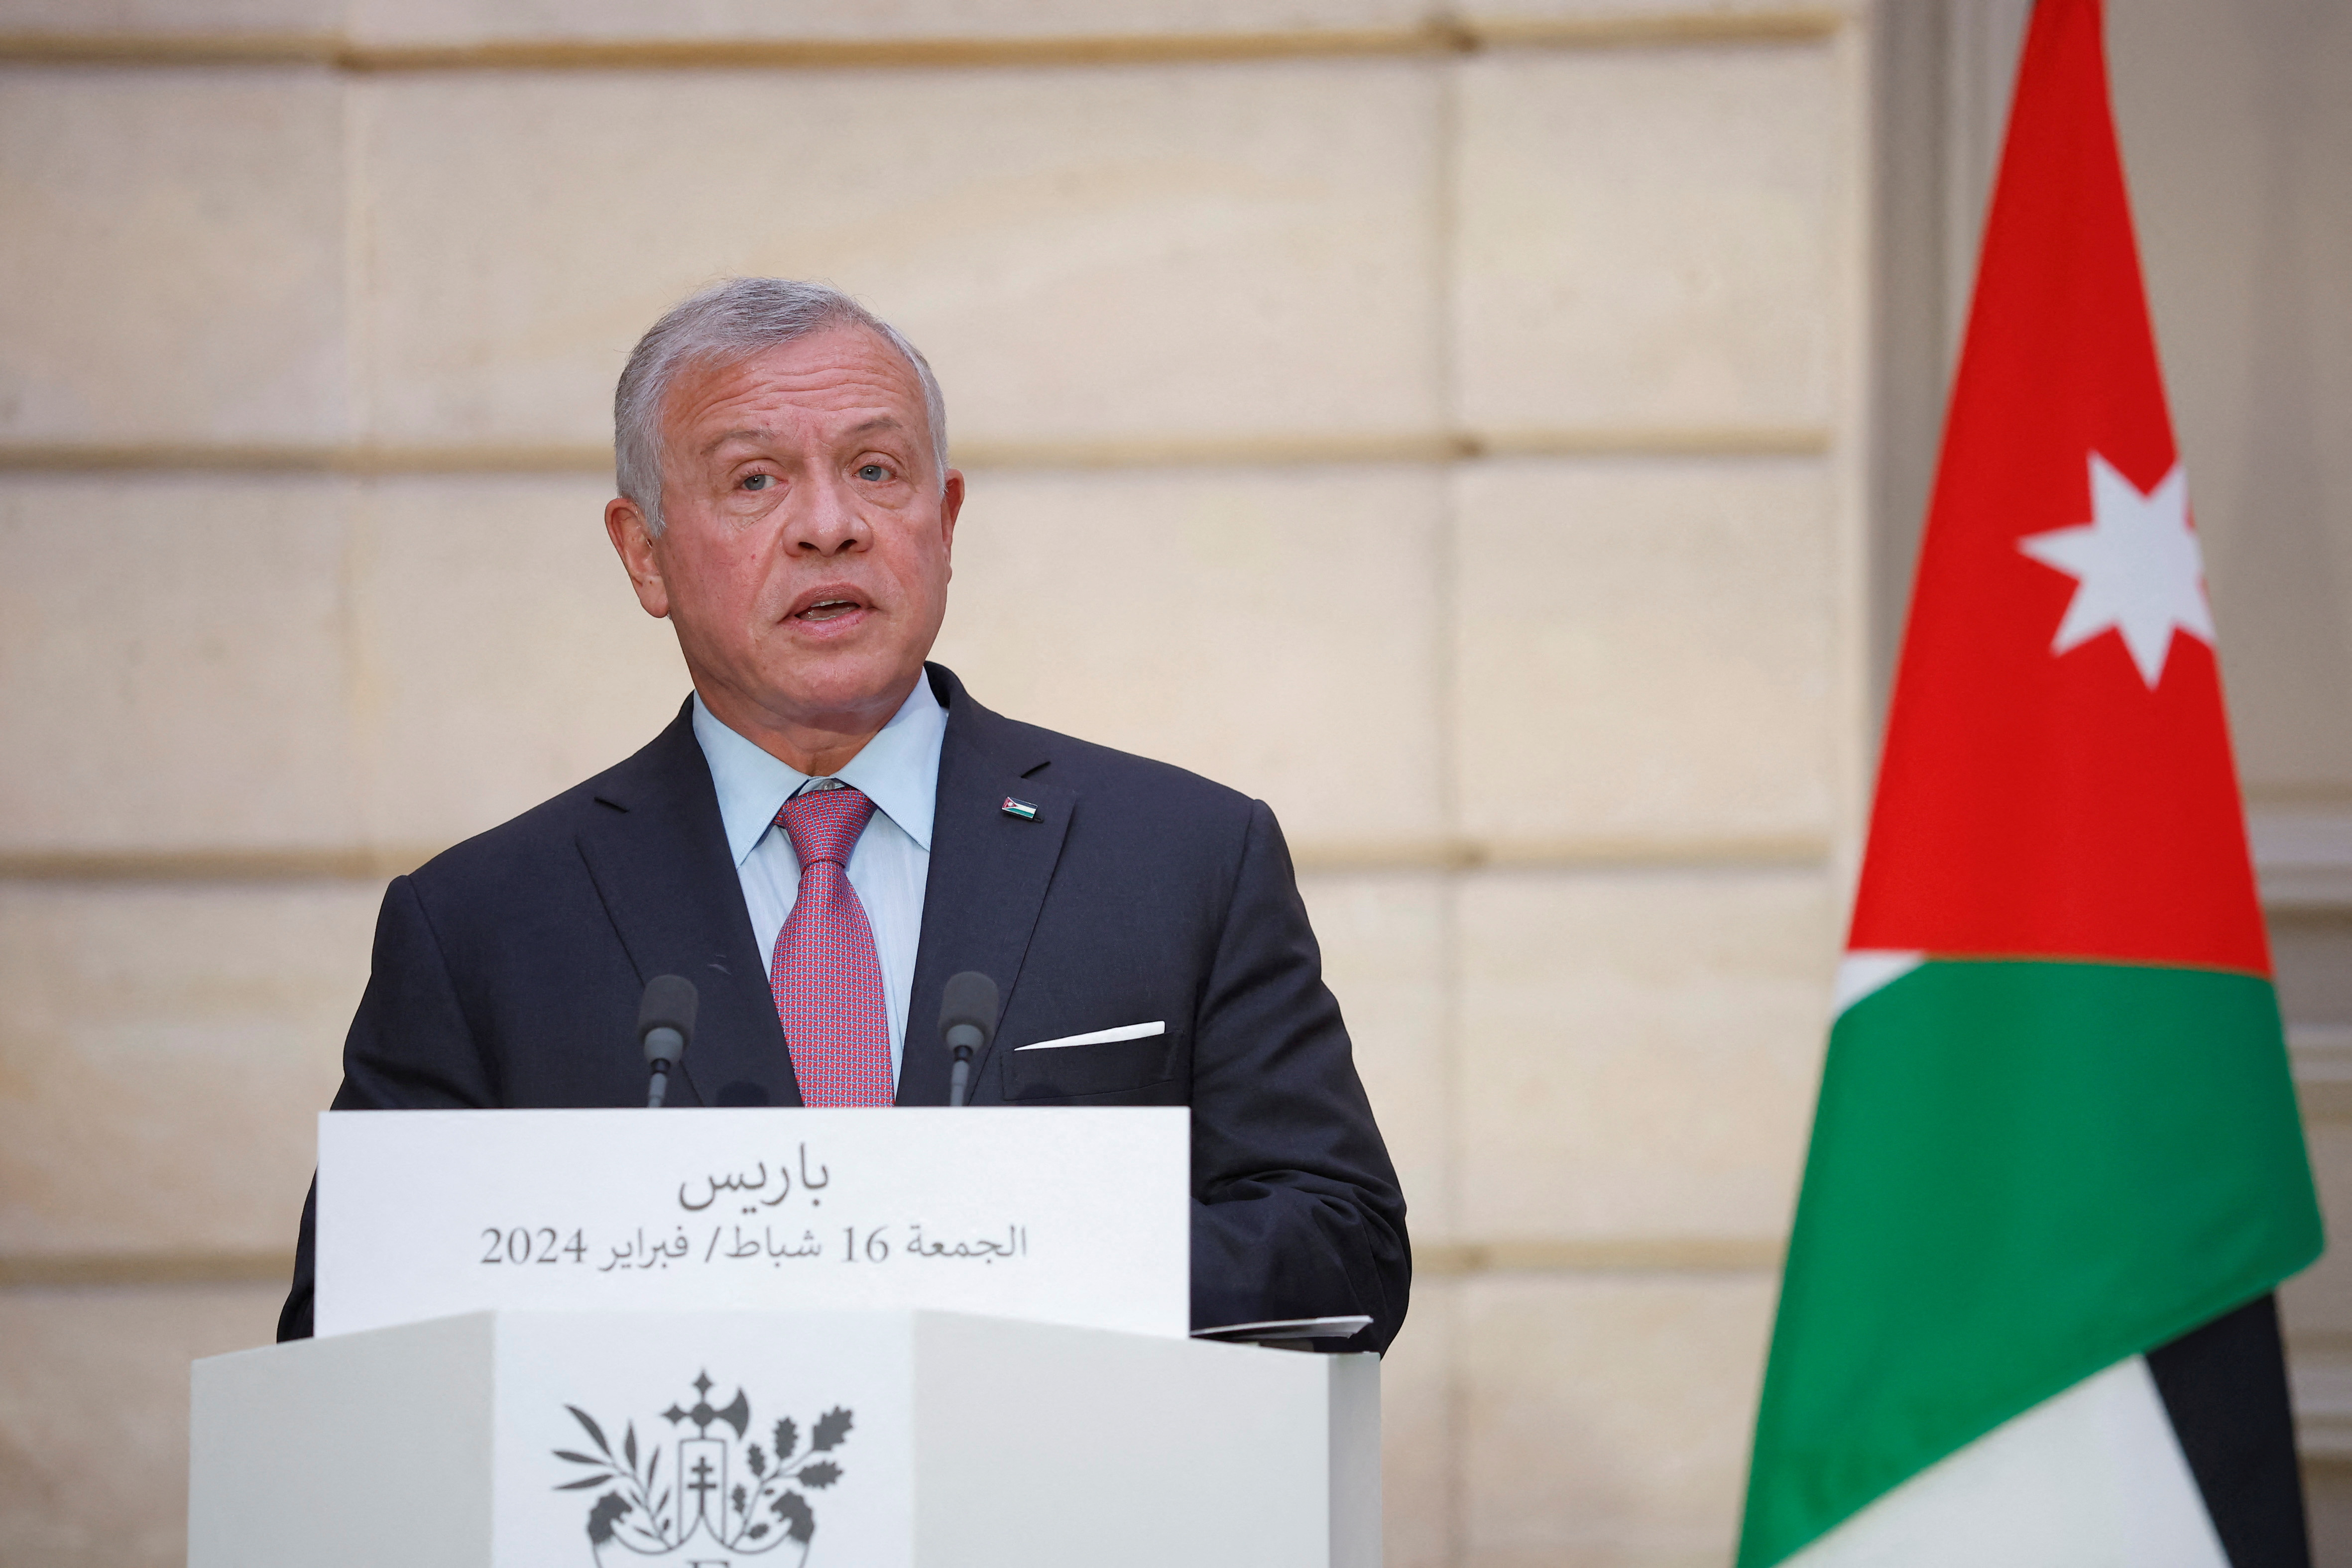 King of Jordan Abdullah II visits Paris